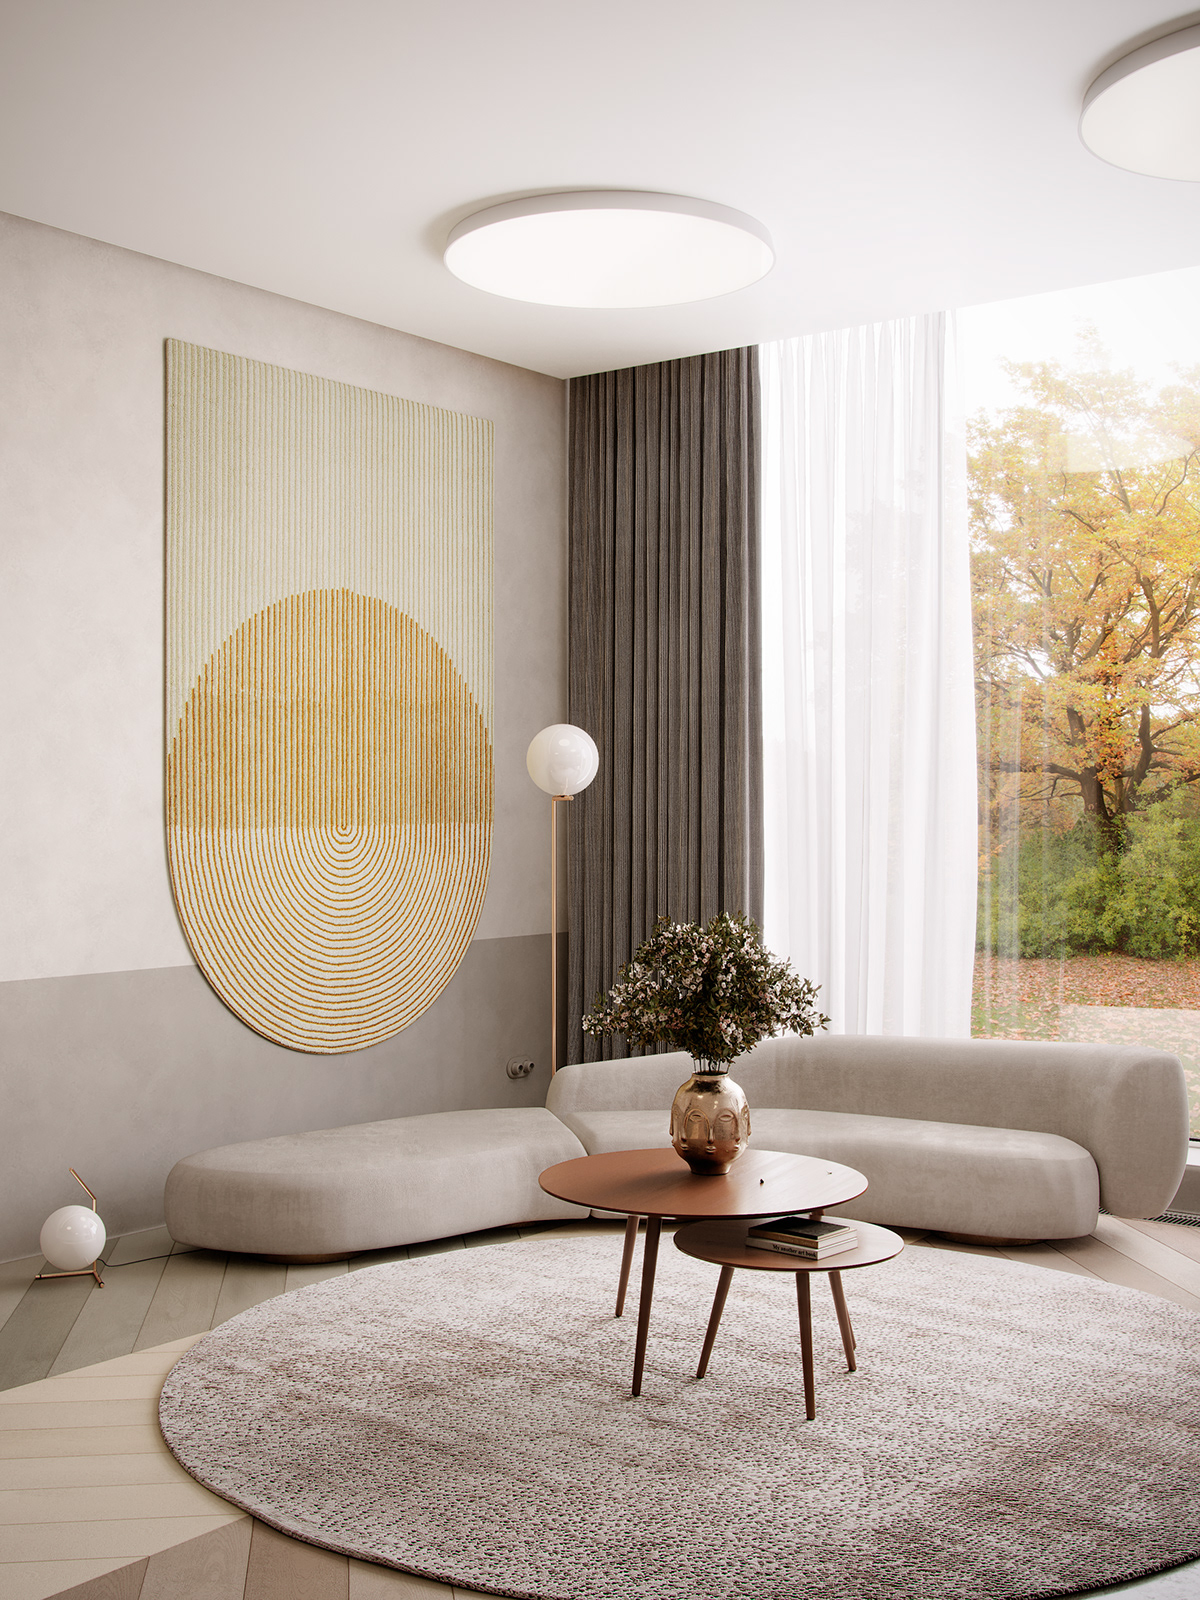 3ds CG corona Interior PS Render renderer design indoor interior design 